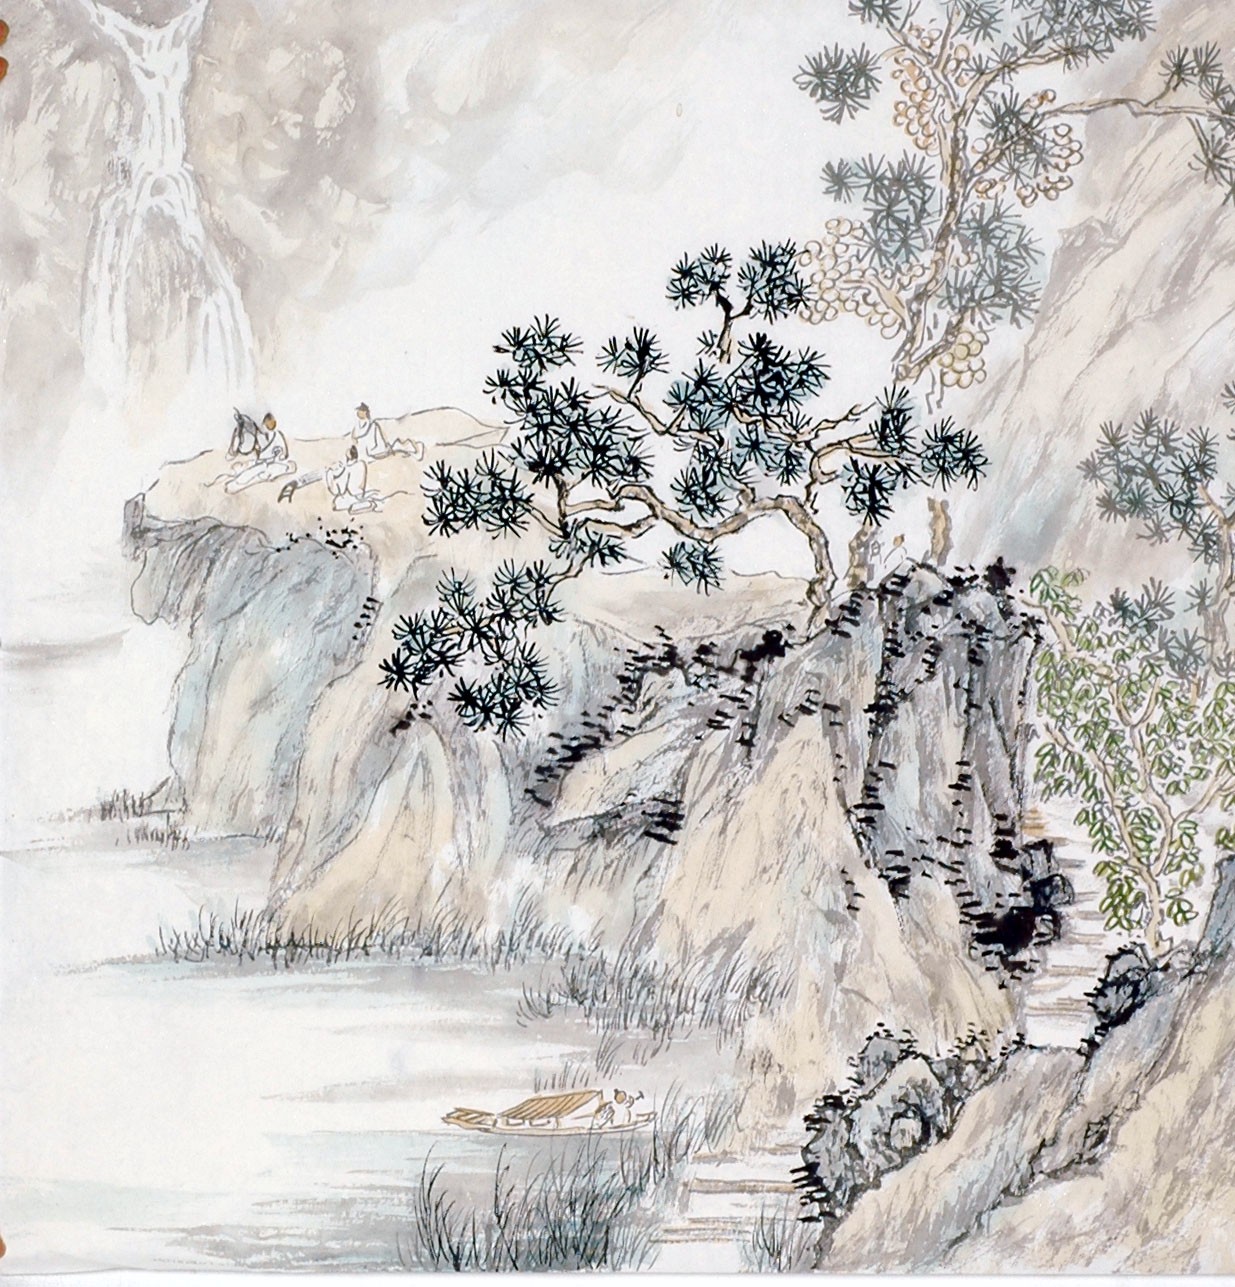 Chinese Landscape Painting - CNAG013810